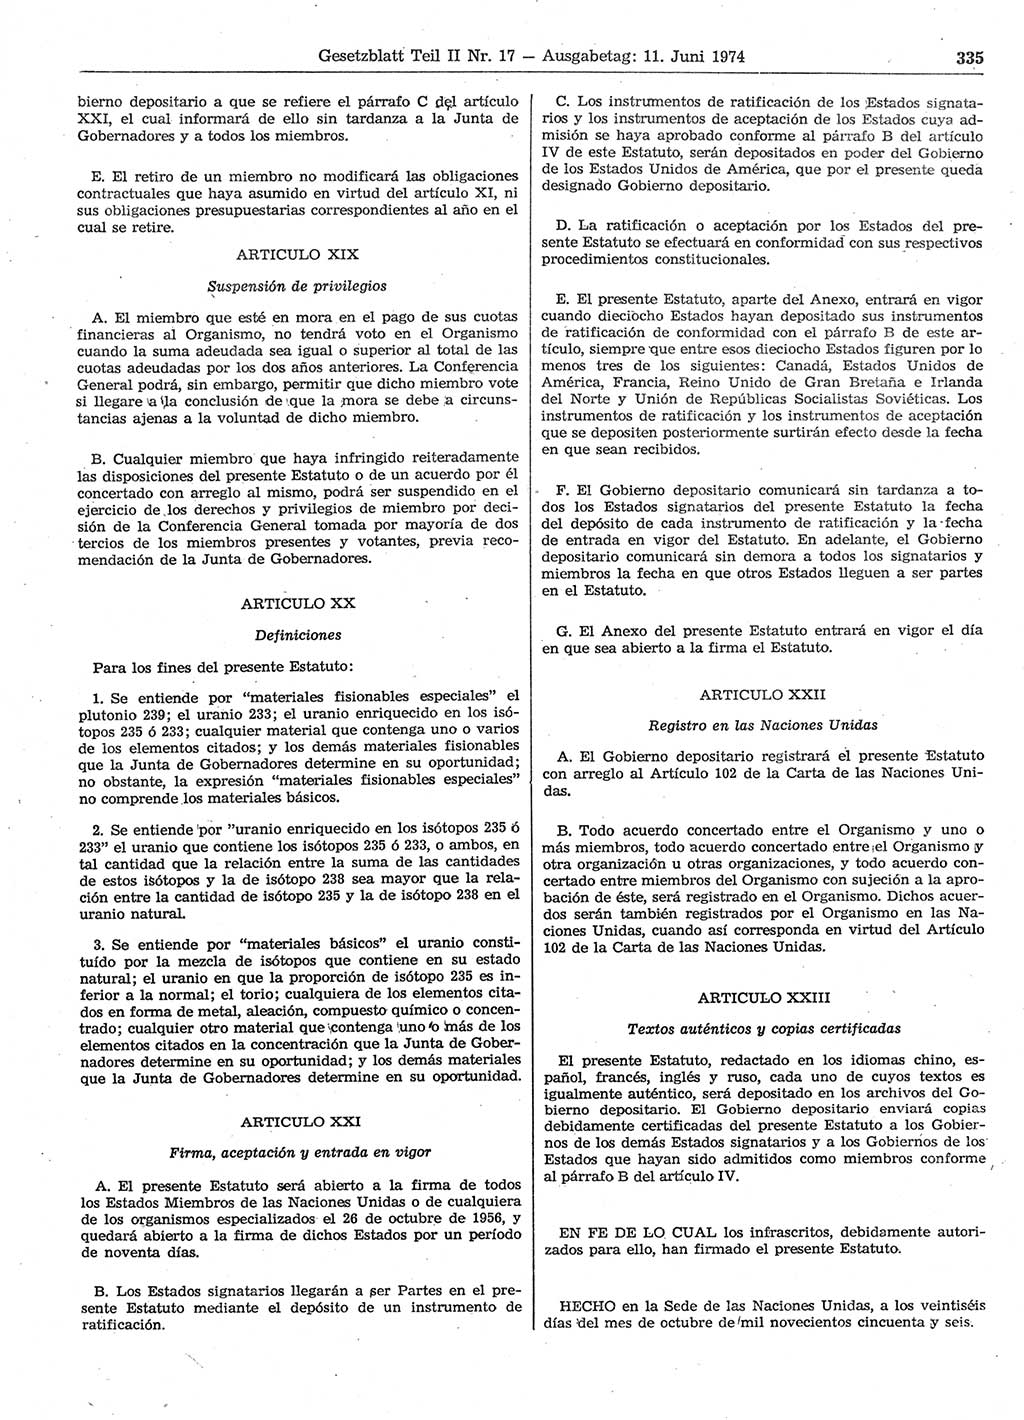 Gesetzblatt (GBl.) der Deutschen Demokratischen Republik (DDR) Teil ⅠⅠ 1974, Seite 335 (GBl. DDR ⅠⅠ 1974, S. 335)